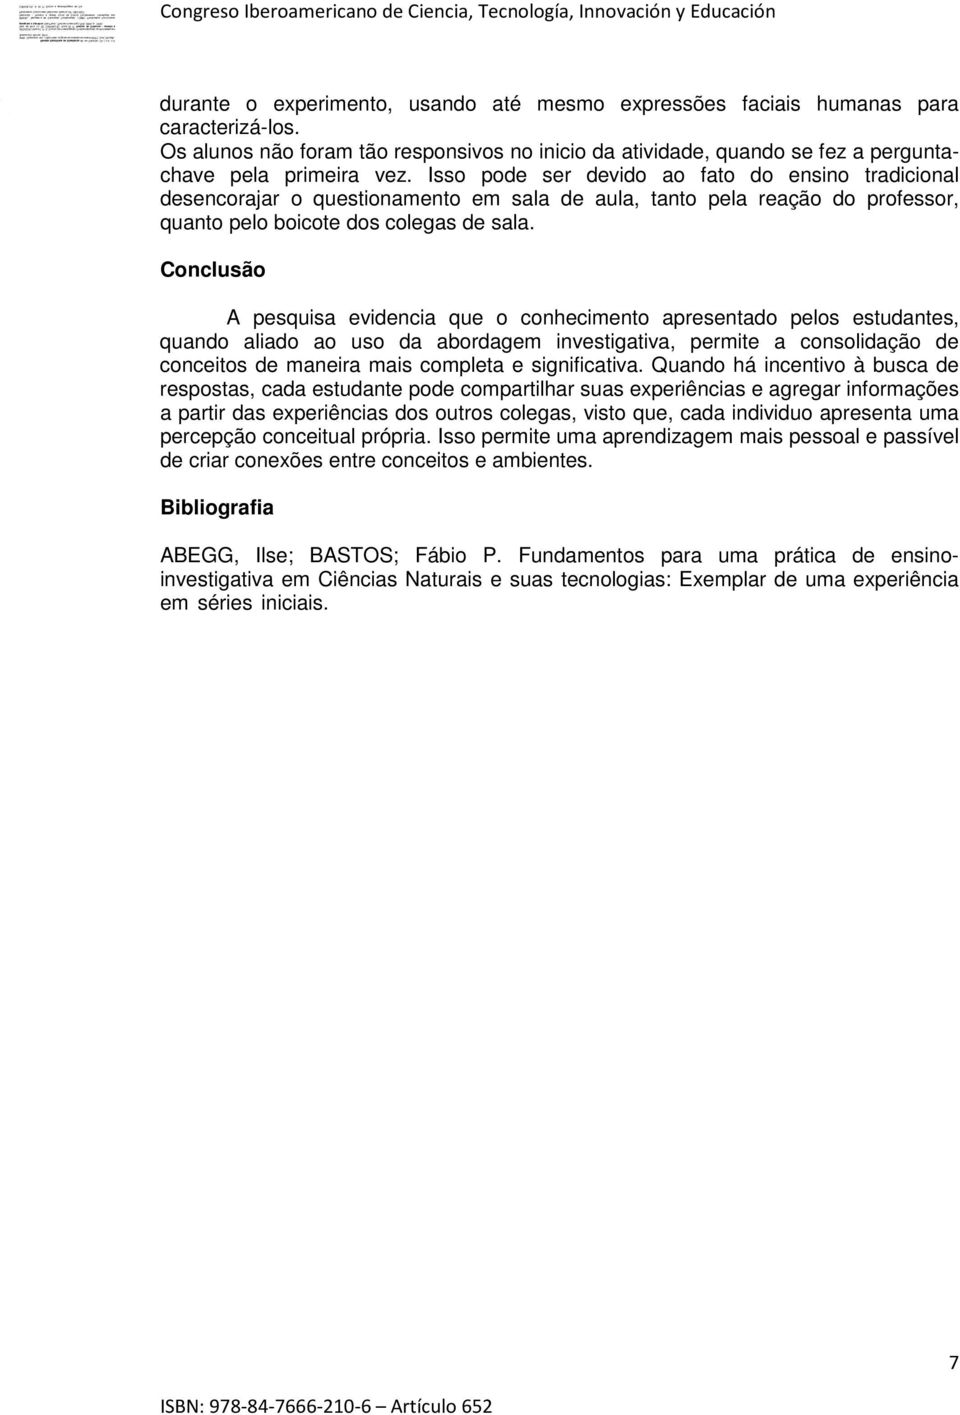 P. C. Maria AZEVEDO, de las Ciências. (S.l.) v.4, n.3. 2005. Disponível em: <http://reec.uvigo.es/volumenes/volumen4/art7_vol4_n3.pdf>. Acesso em: 09 mar. 2014.